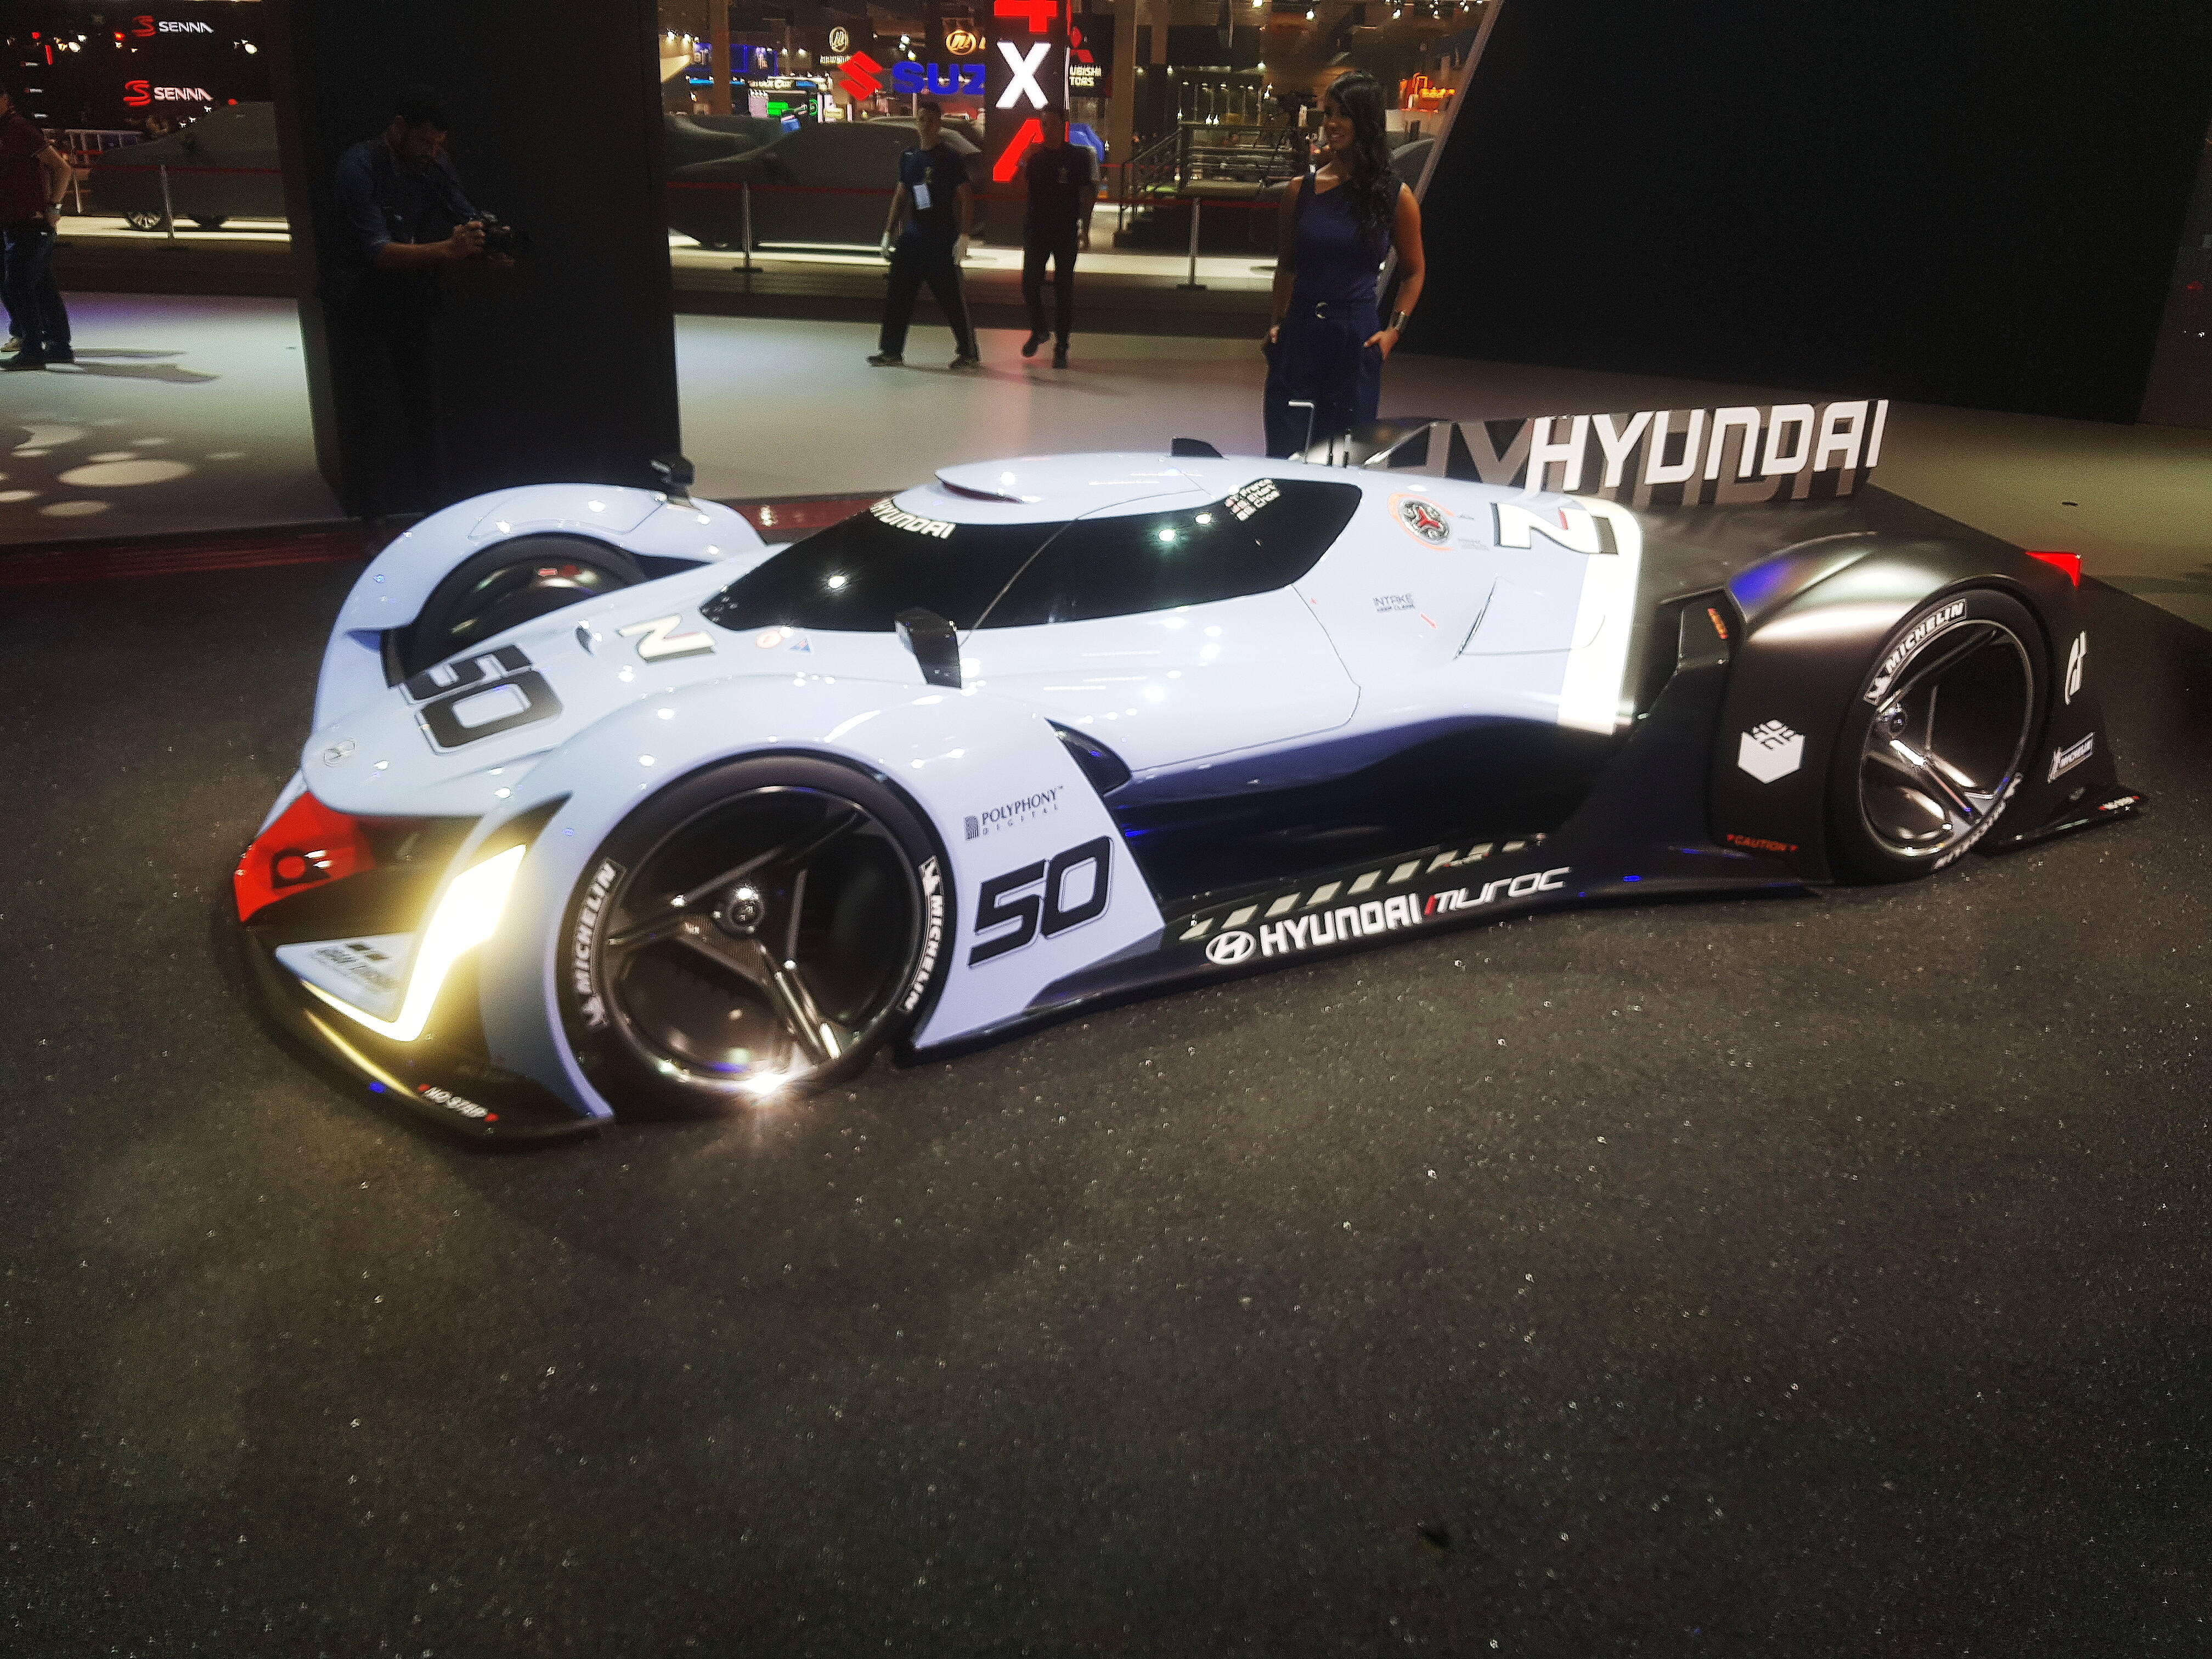 O protótipo N2015 Vision Gran Turismo também está exposto no Salão do Automóvel 2018. Foto: Caue Lira/iG